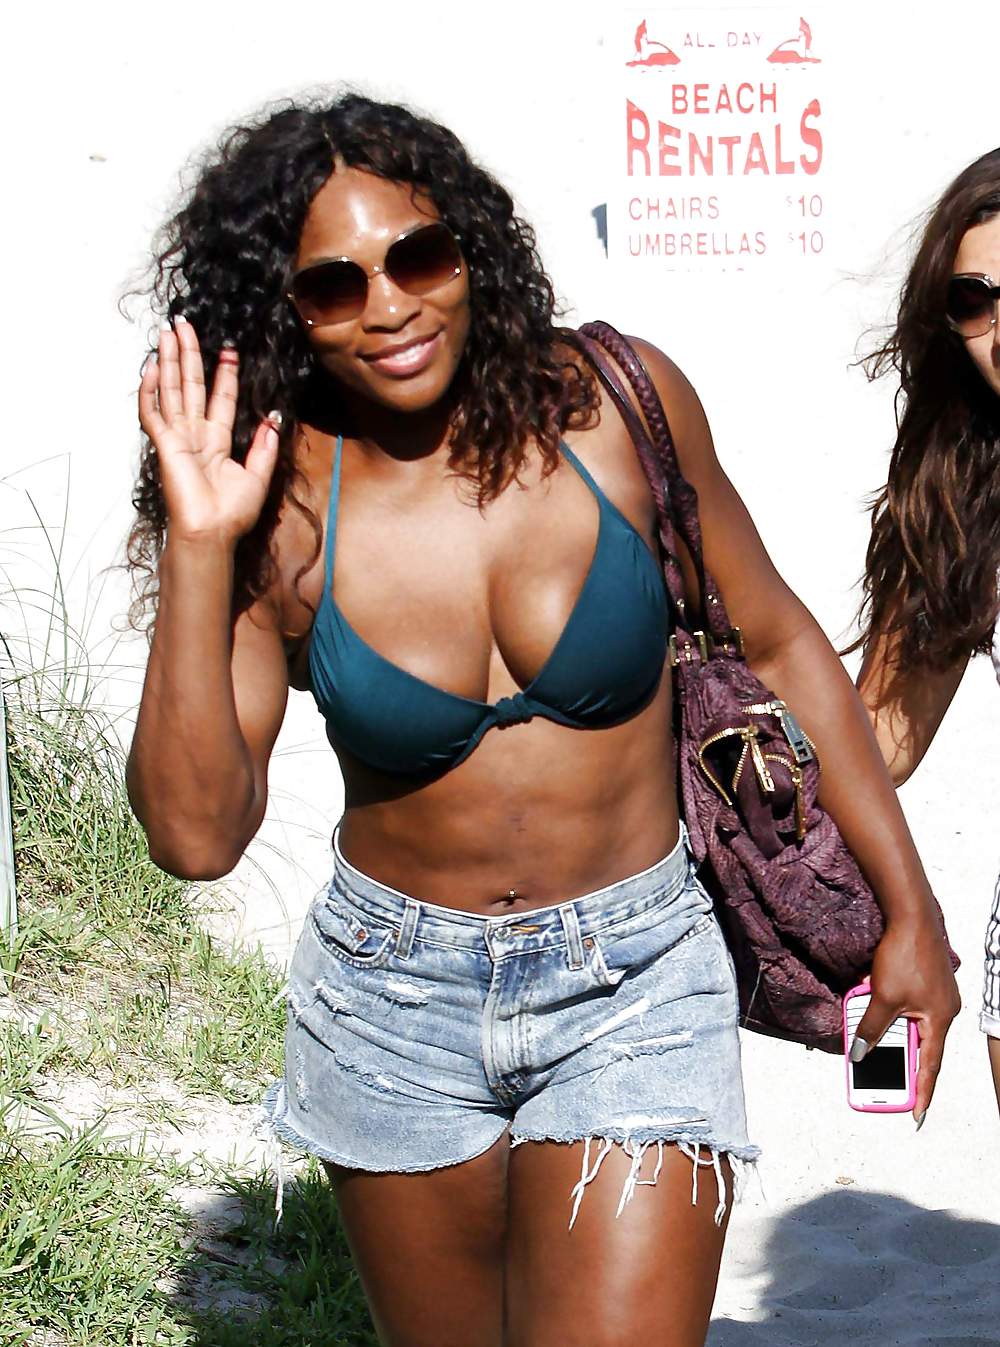 Serena williams - indossando un bikini in una spiaggia di miami
 #5325846